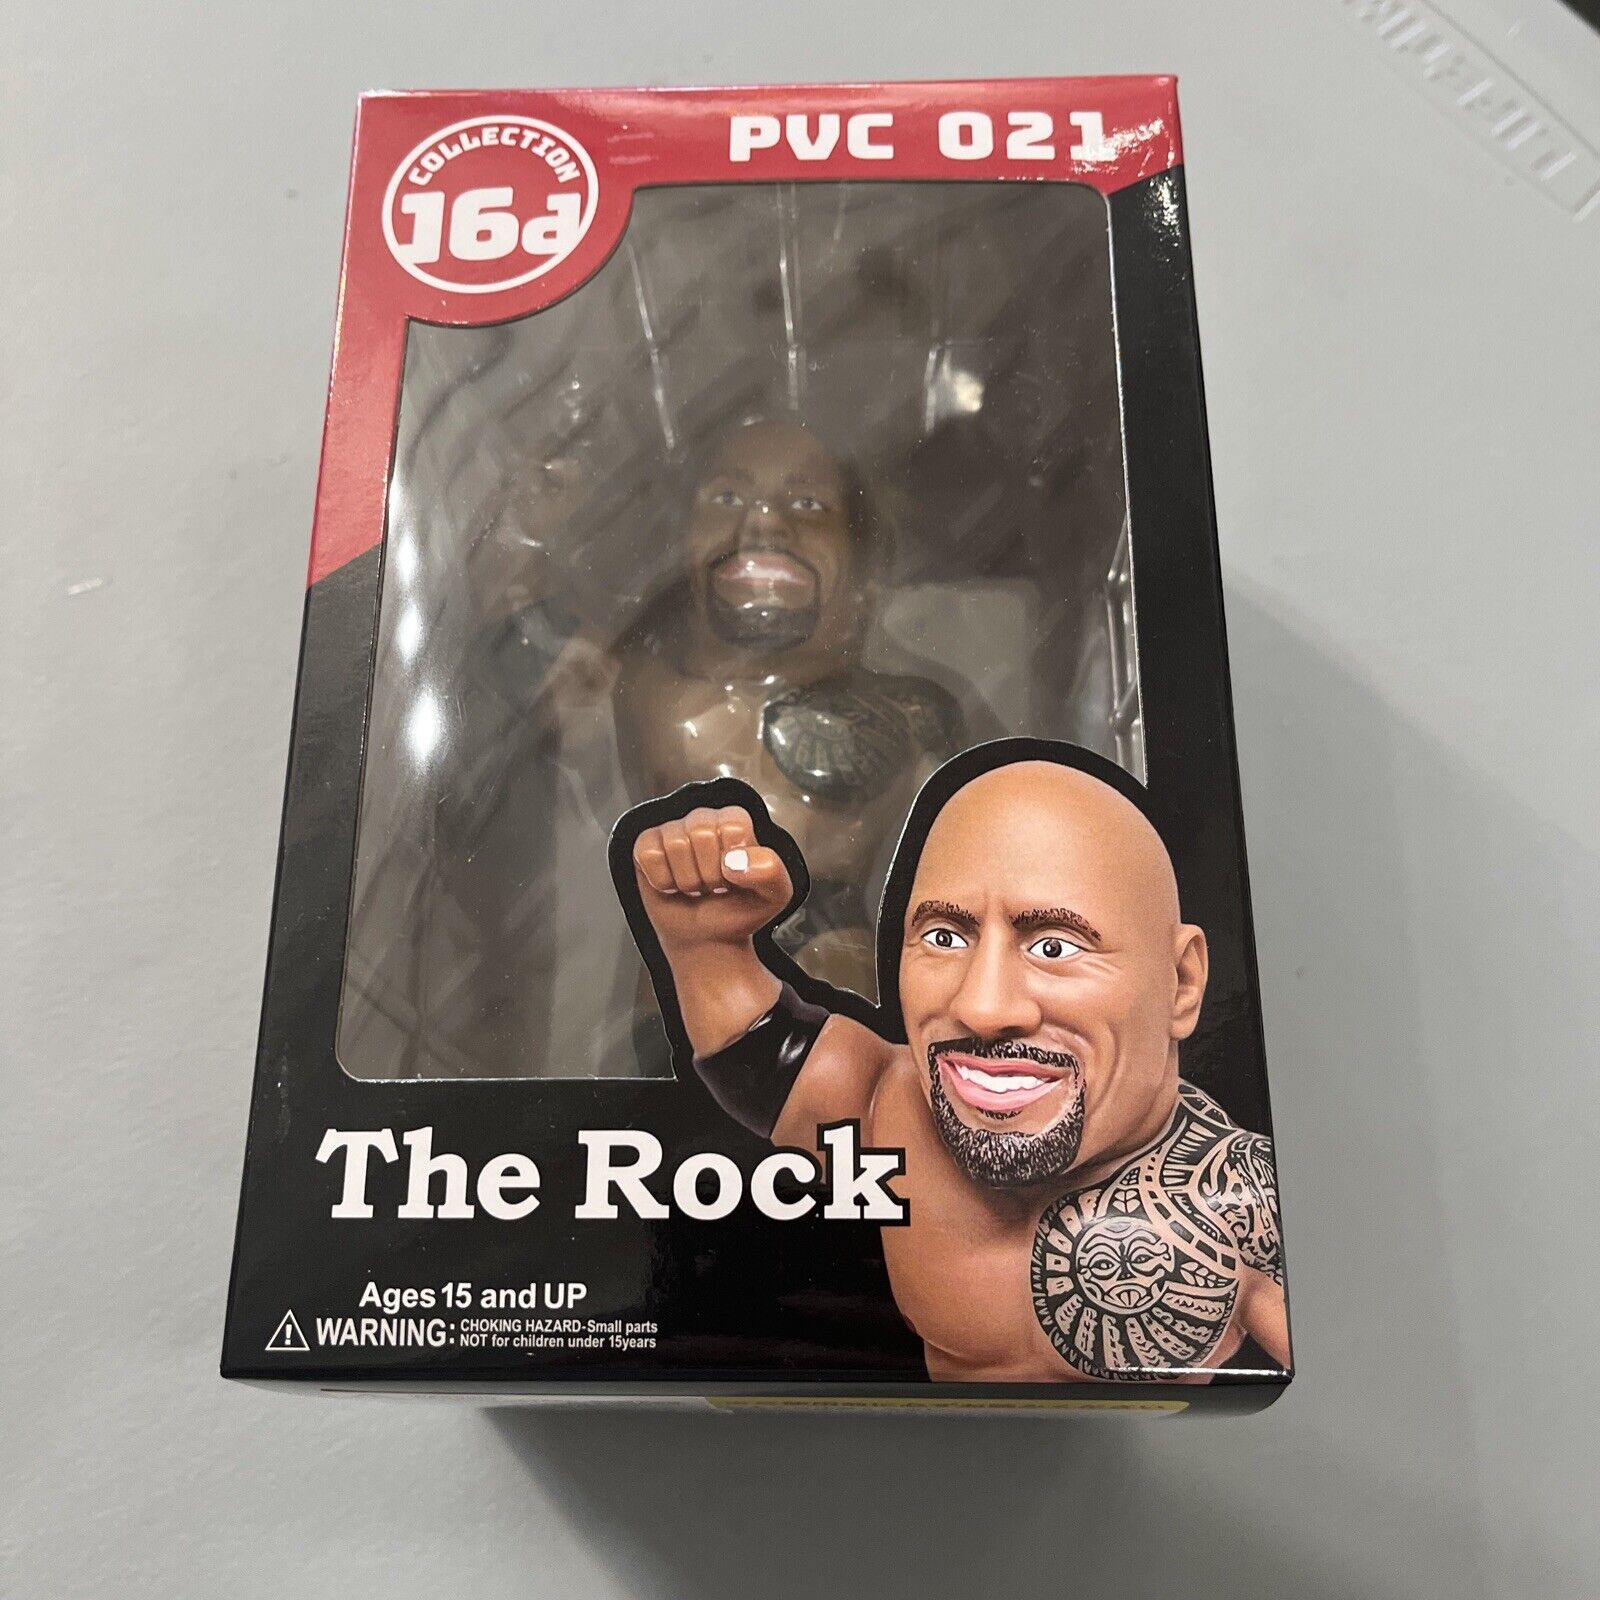 Dewayne Johnson The Rock WWE Series PVC 021 16D Collection 5” Vinyl Figure 